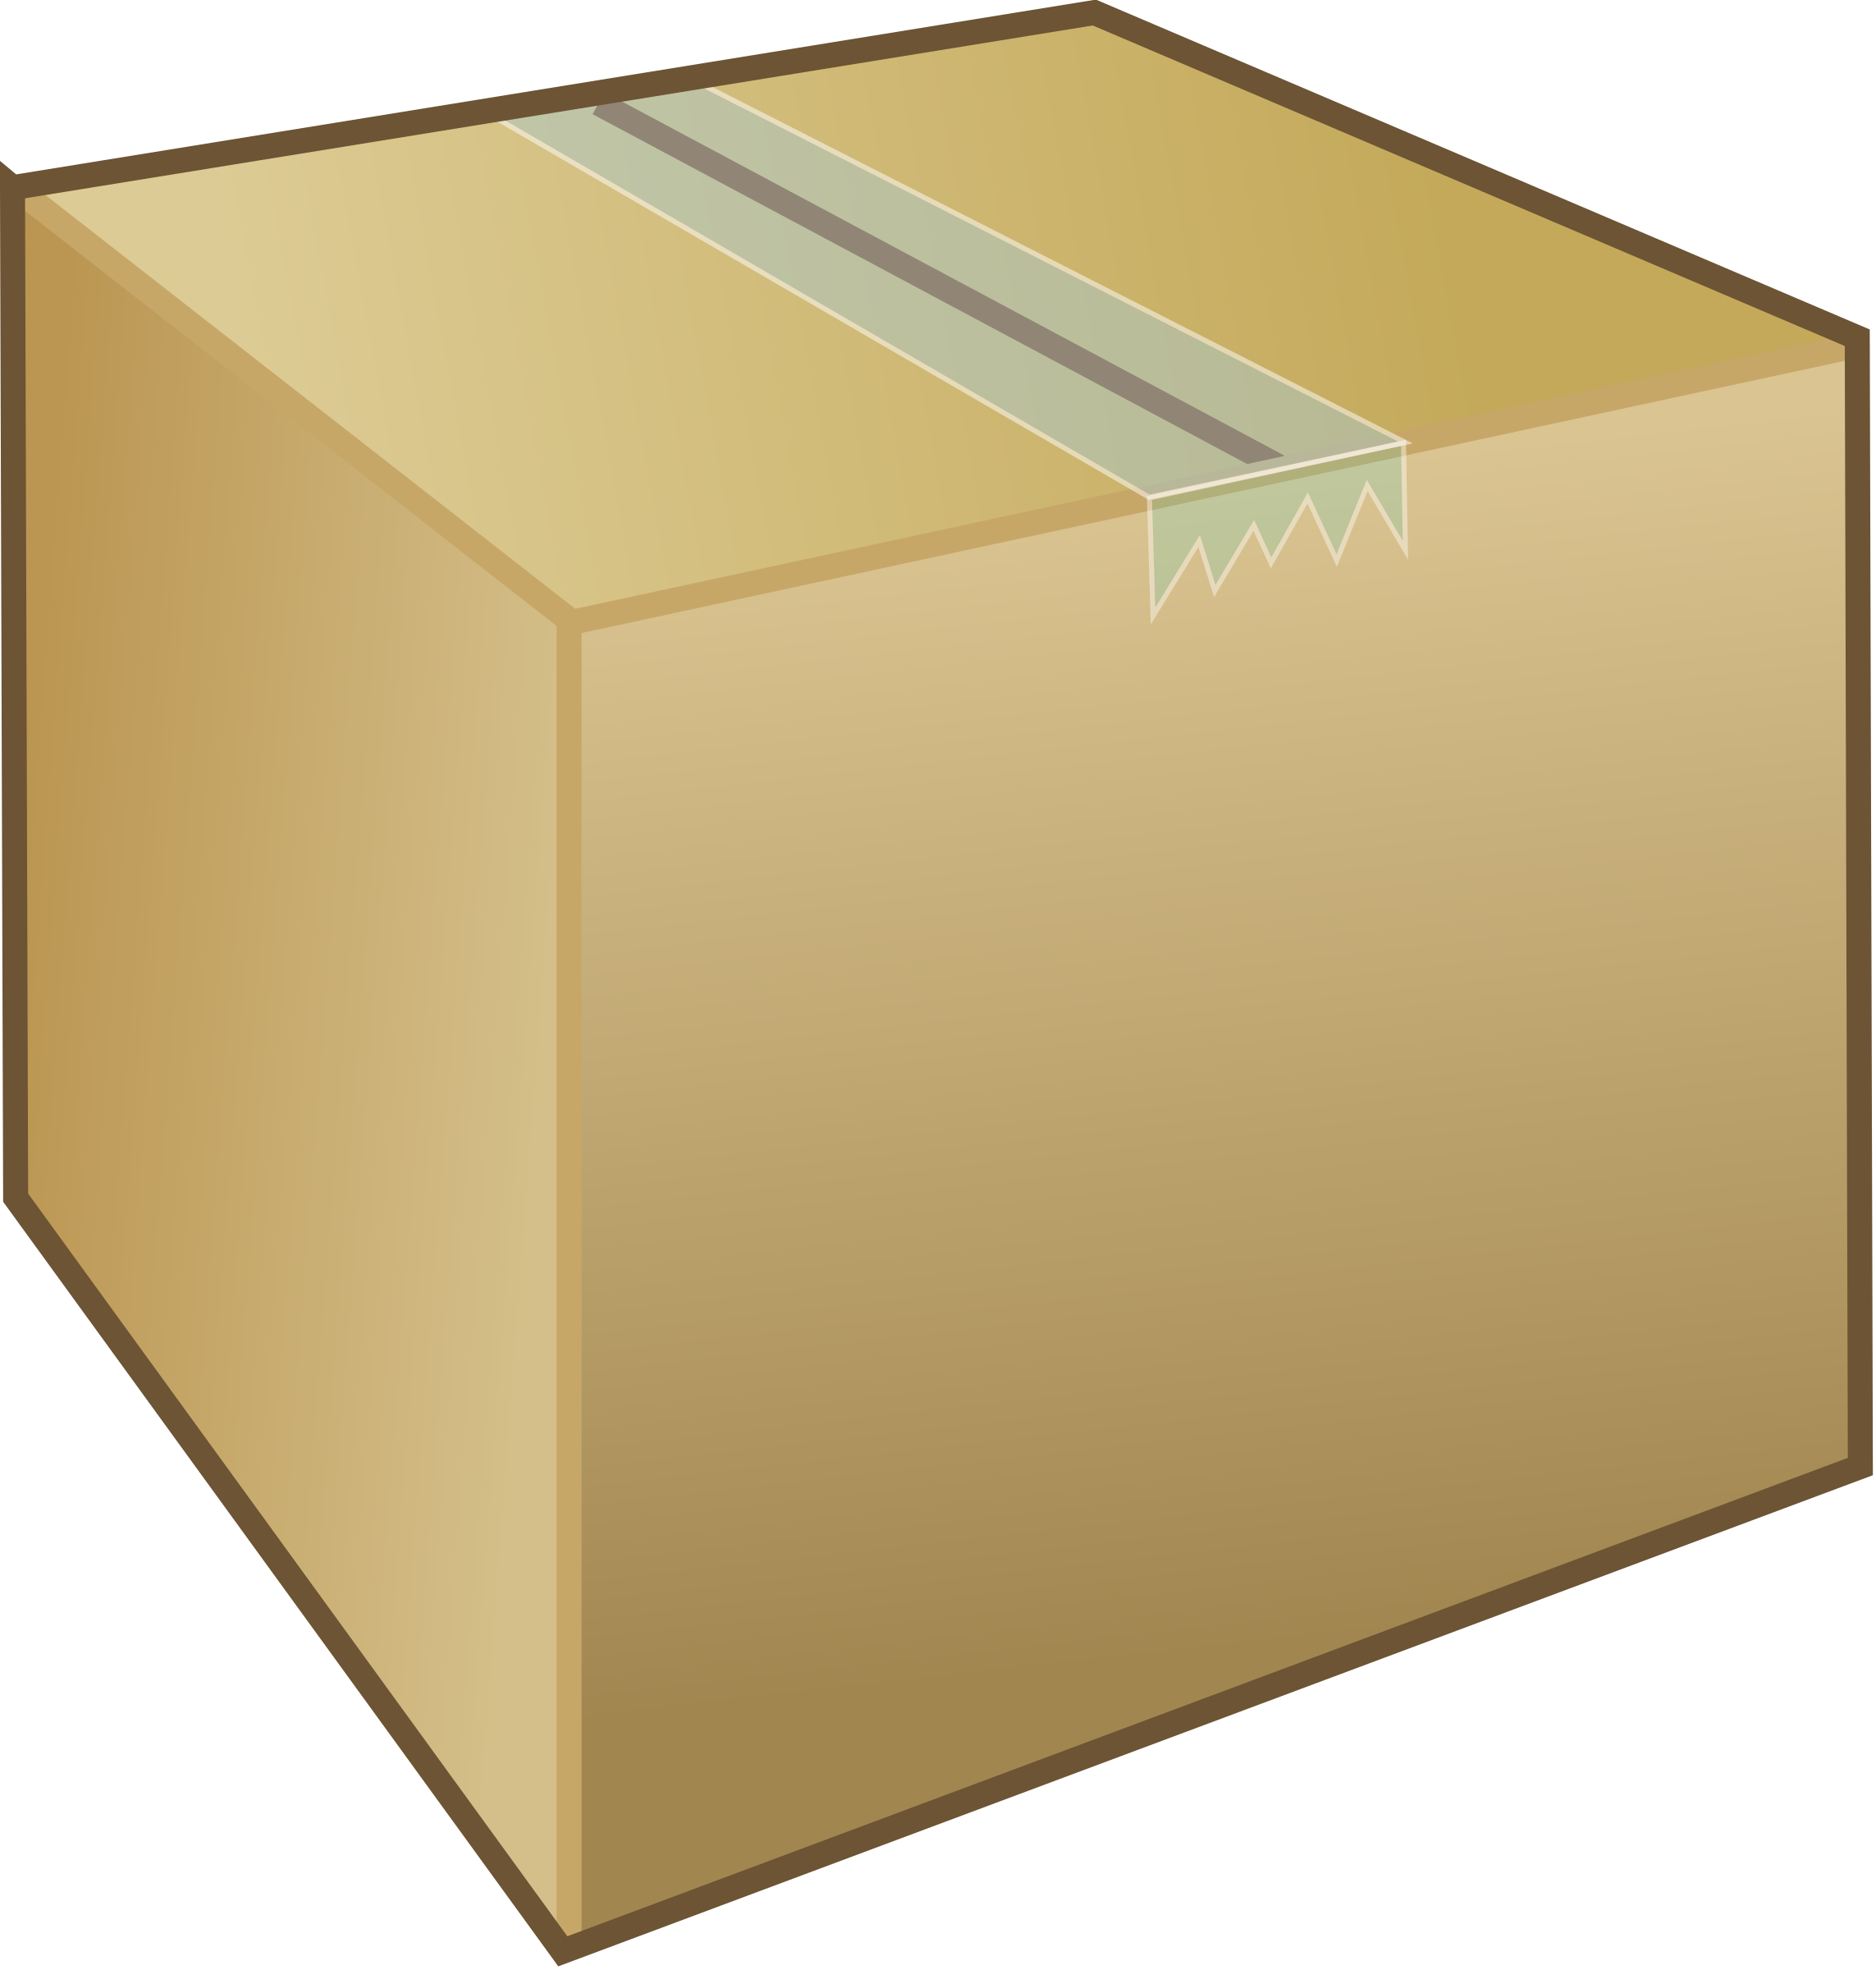 Picture box c. Картонная коробка без фона. Коробка на белом фоне. Картонные коробки на прозрачном фоне. Мультяшная картонная коробка.